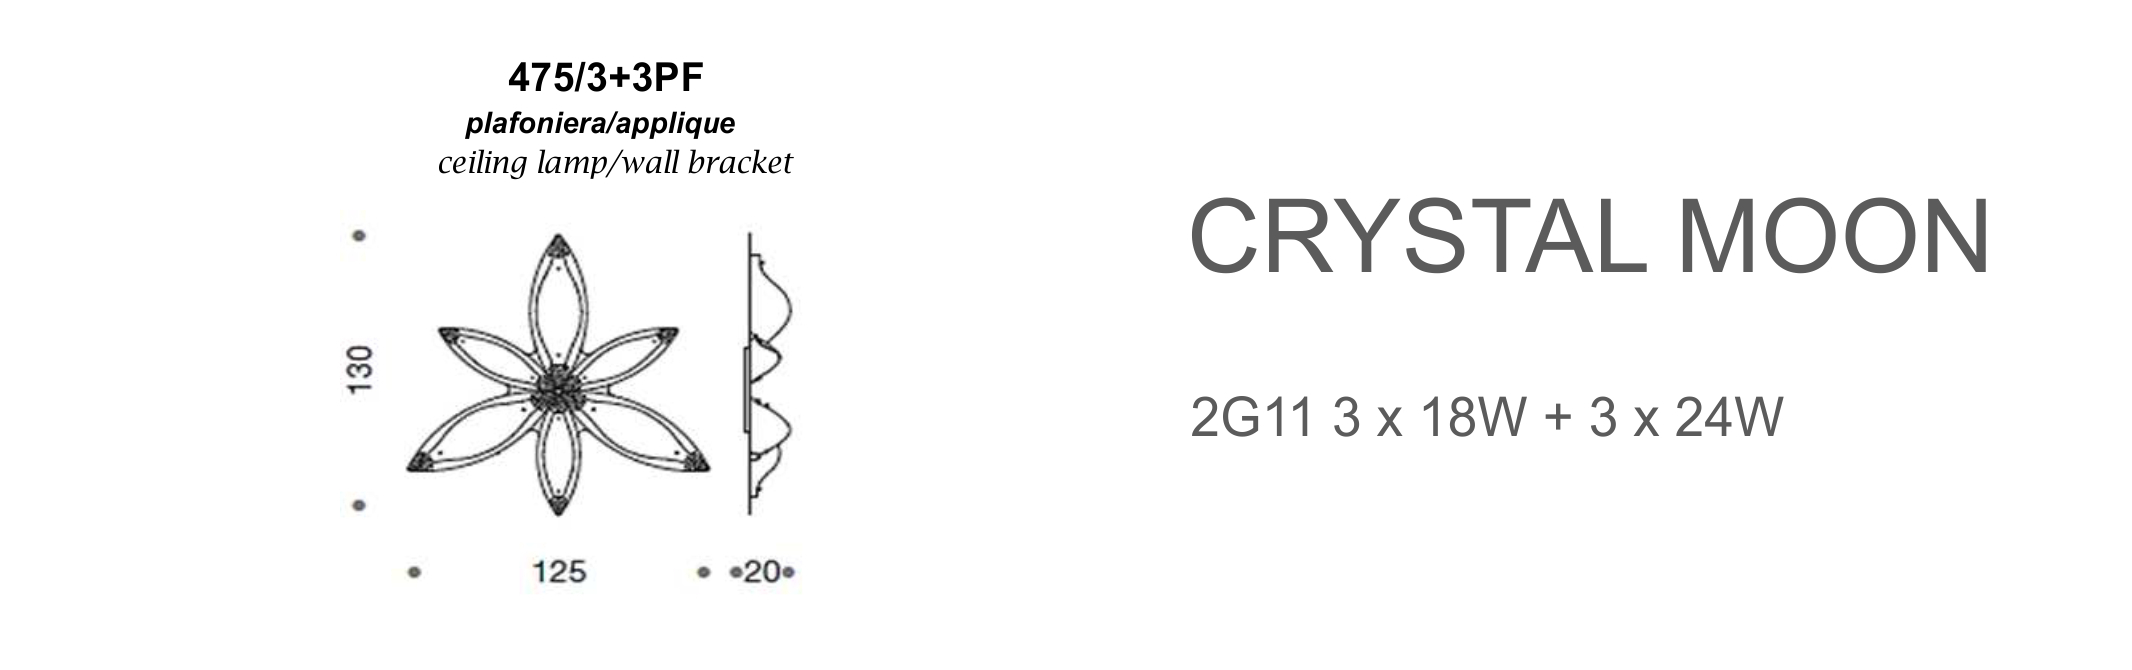 Crystal Moon 475/3+3PF